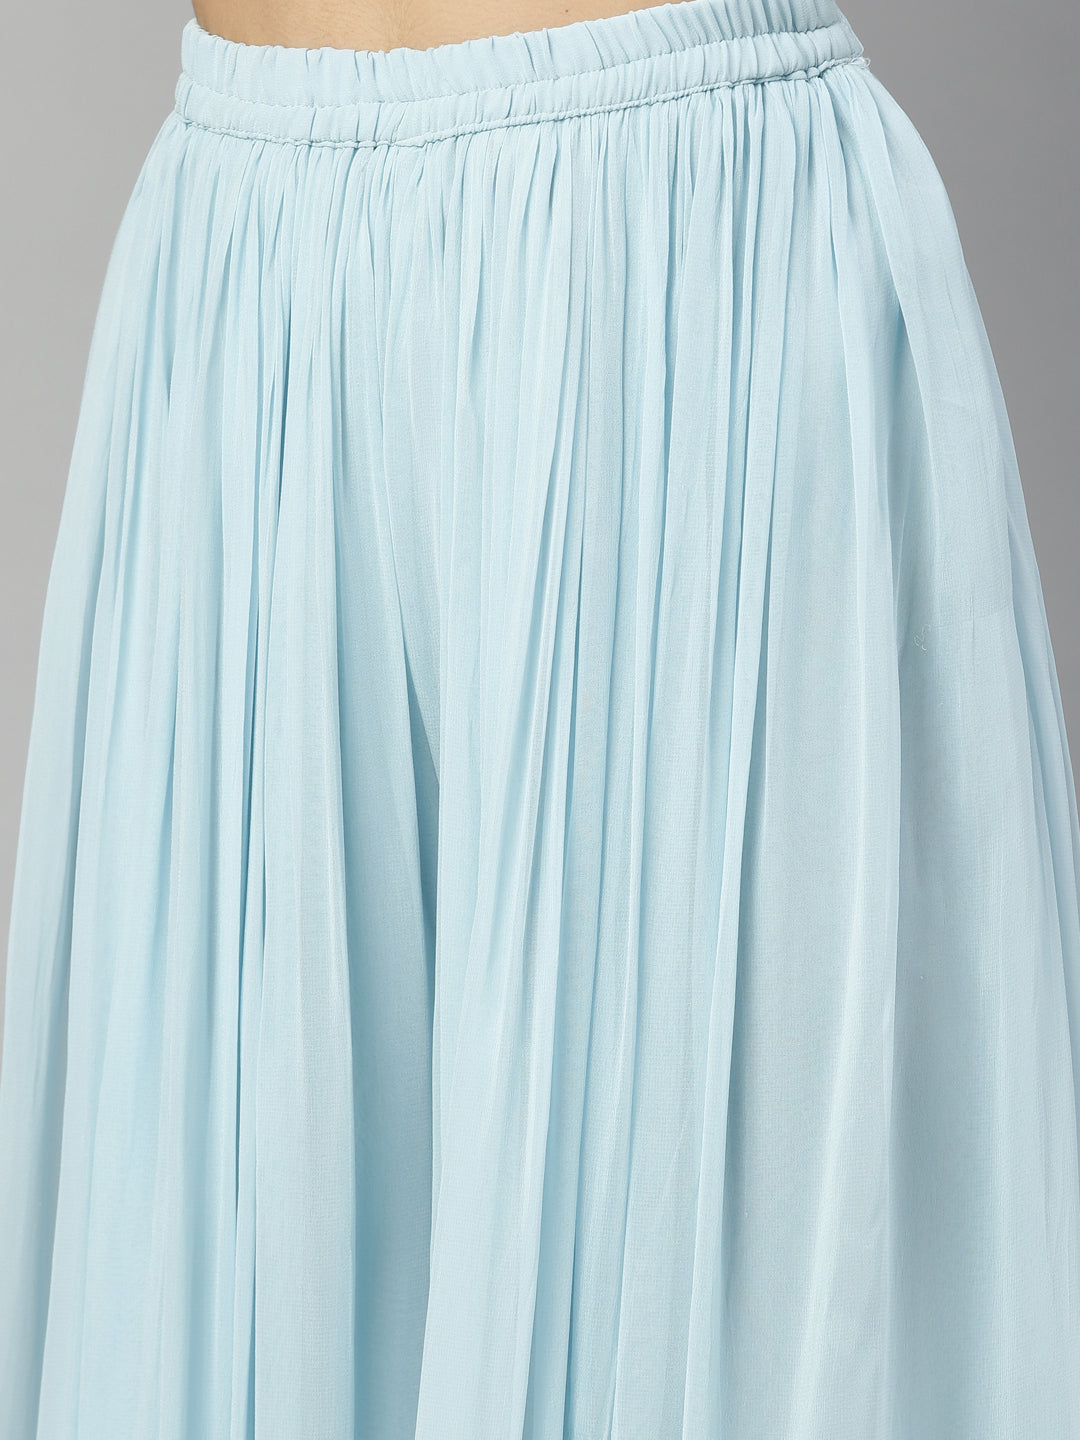 Neeru's Sky Blue Color Georgette Fabric Suit-Fusion